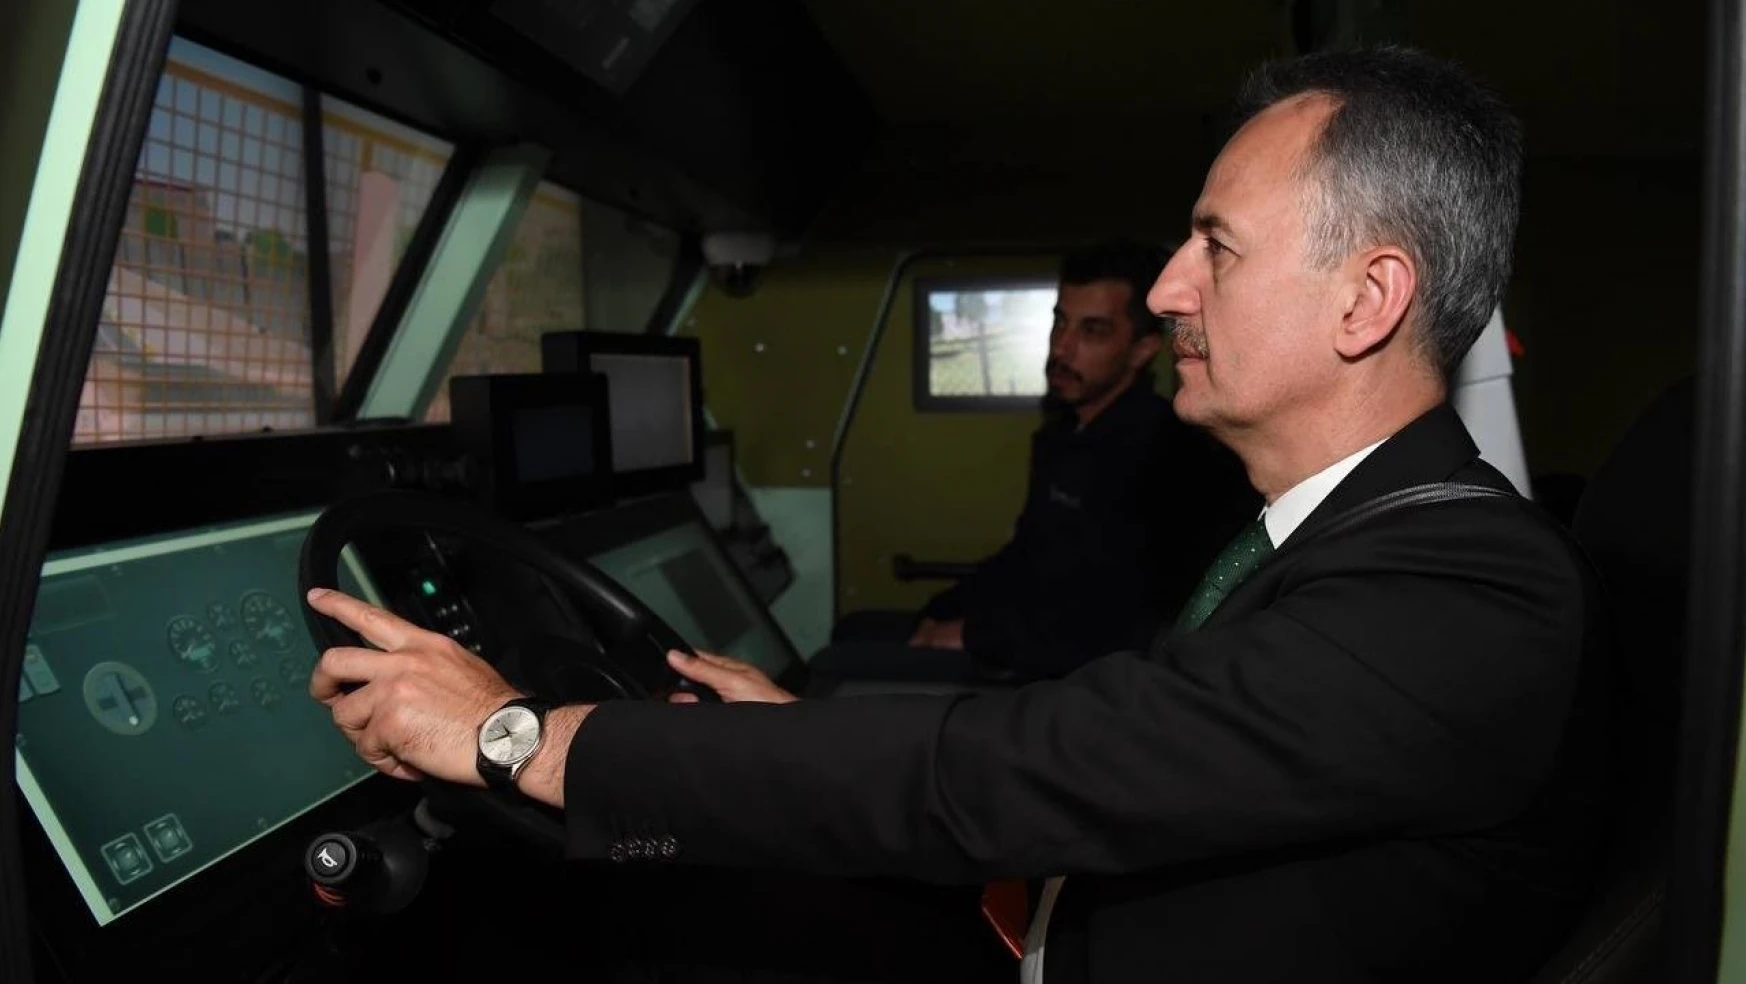 Savunma Sanayii Başkanı Görgün: 'Simülasyon teknolojileri dünyada artan bir önem kazandı'